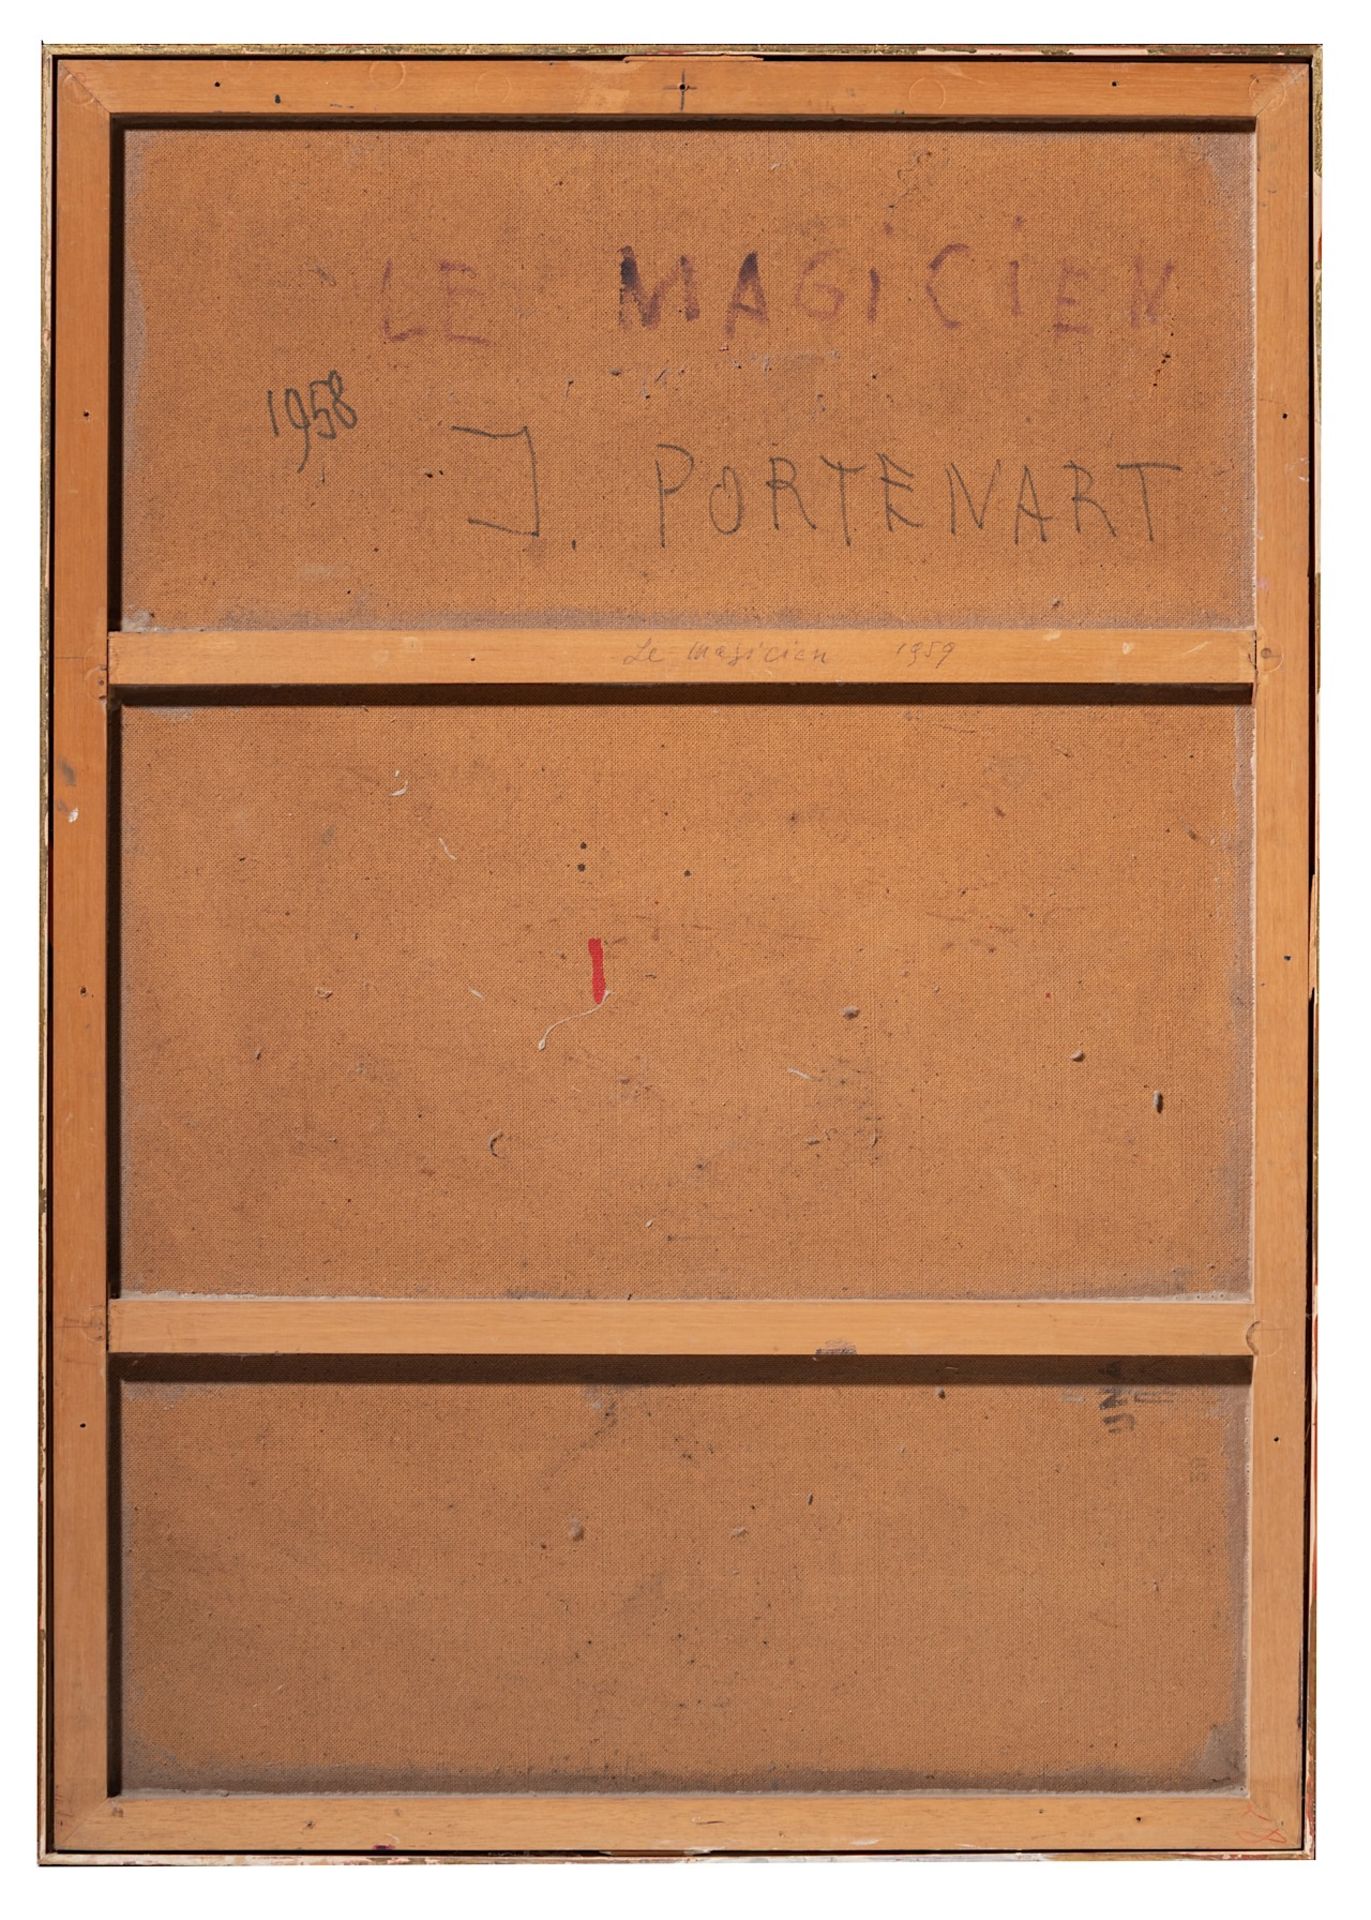 Jeanne Portenart (1911-1992), 'Le Magicien', 1958, oil on board 100 x 70 cm. (39.3 x 27.5 in.) - Image 3 of 7